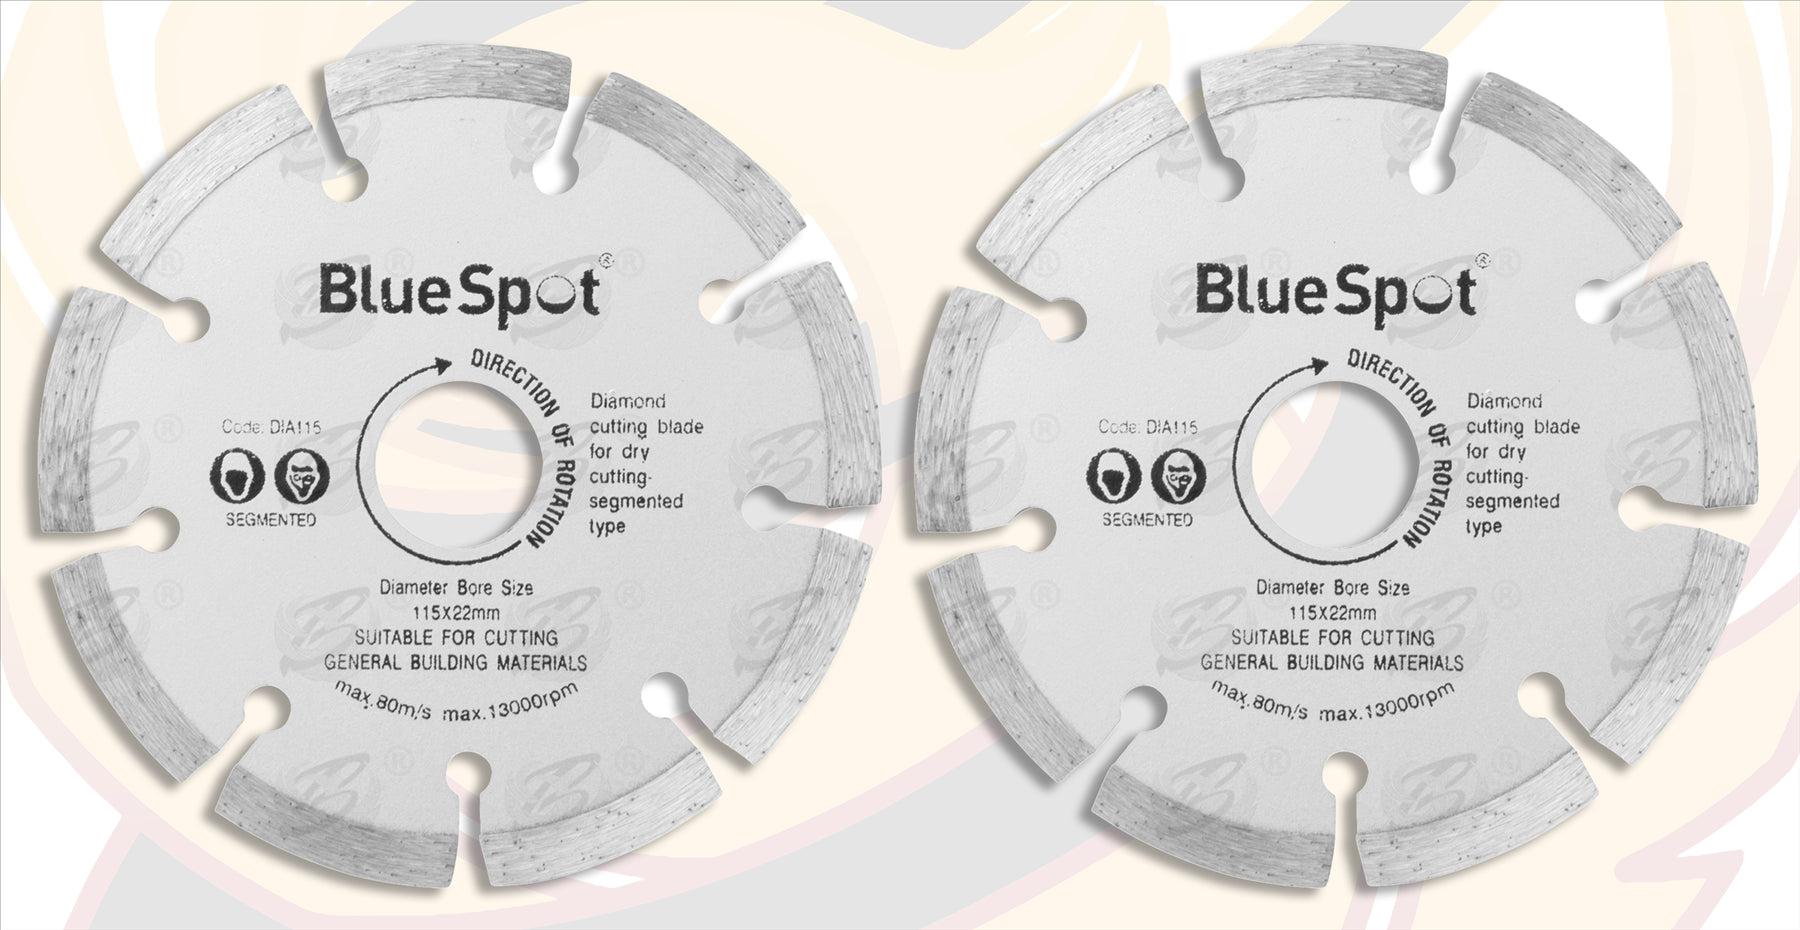 BLUESPOT 4.5" ( 115MM ) DIAMOND CUTTING DISCS ( X 2 )